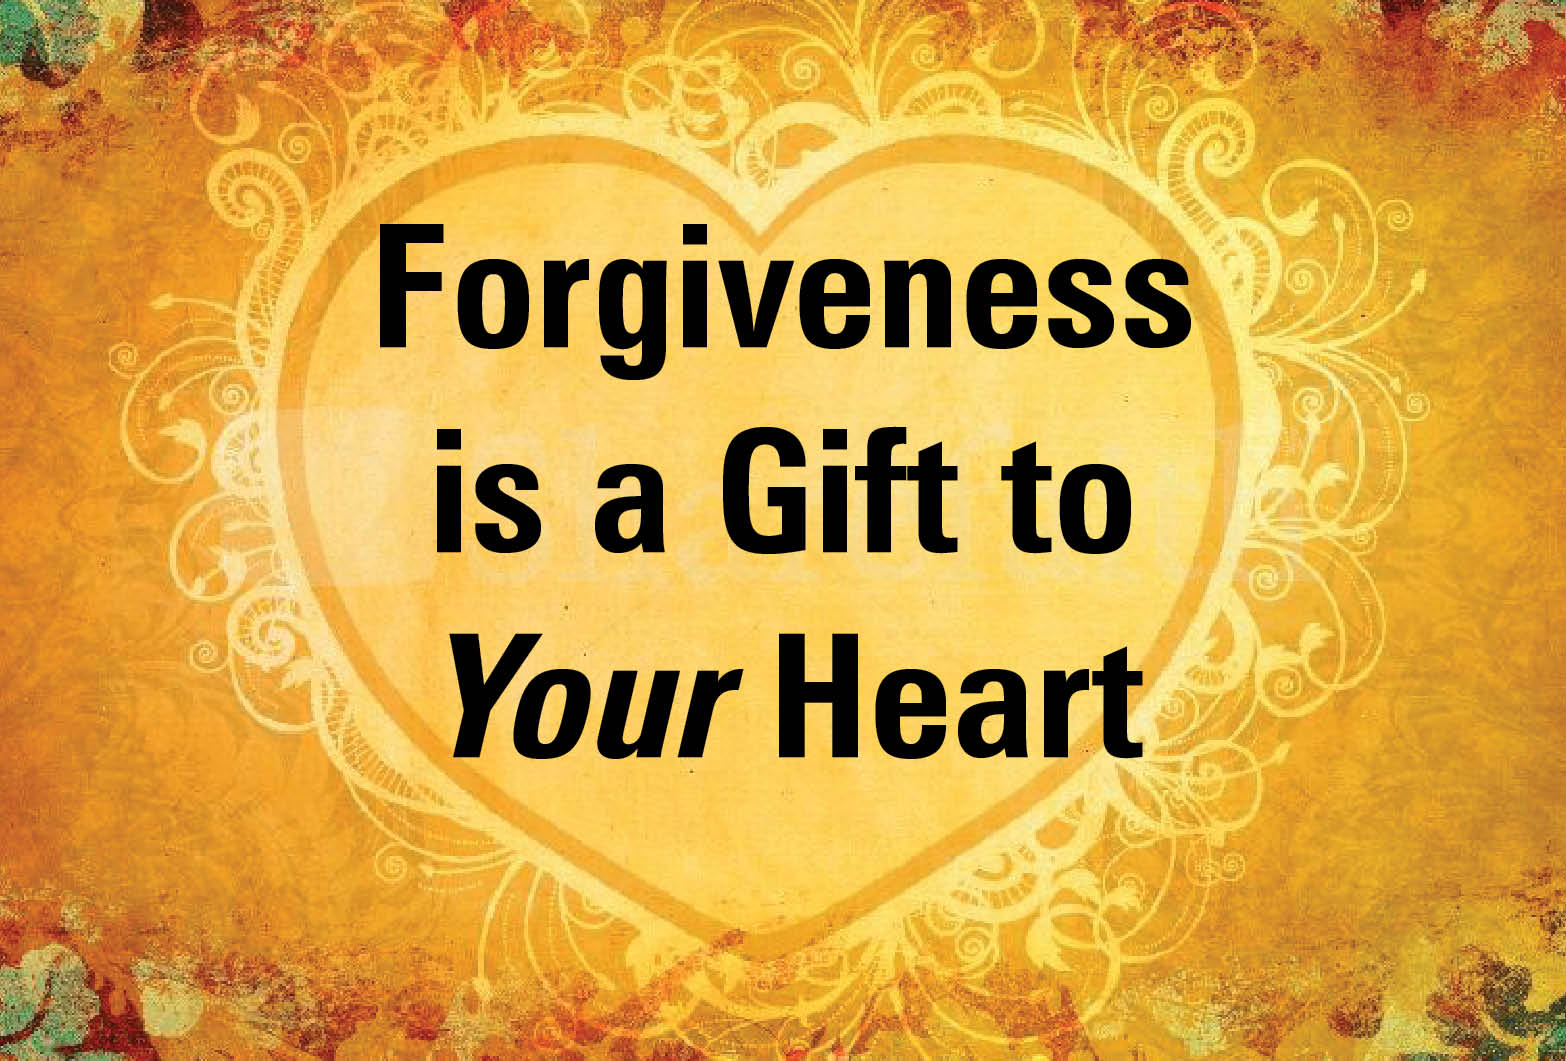 bible verse about forgiveness light heart